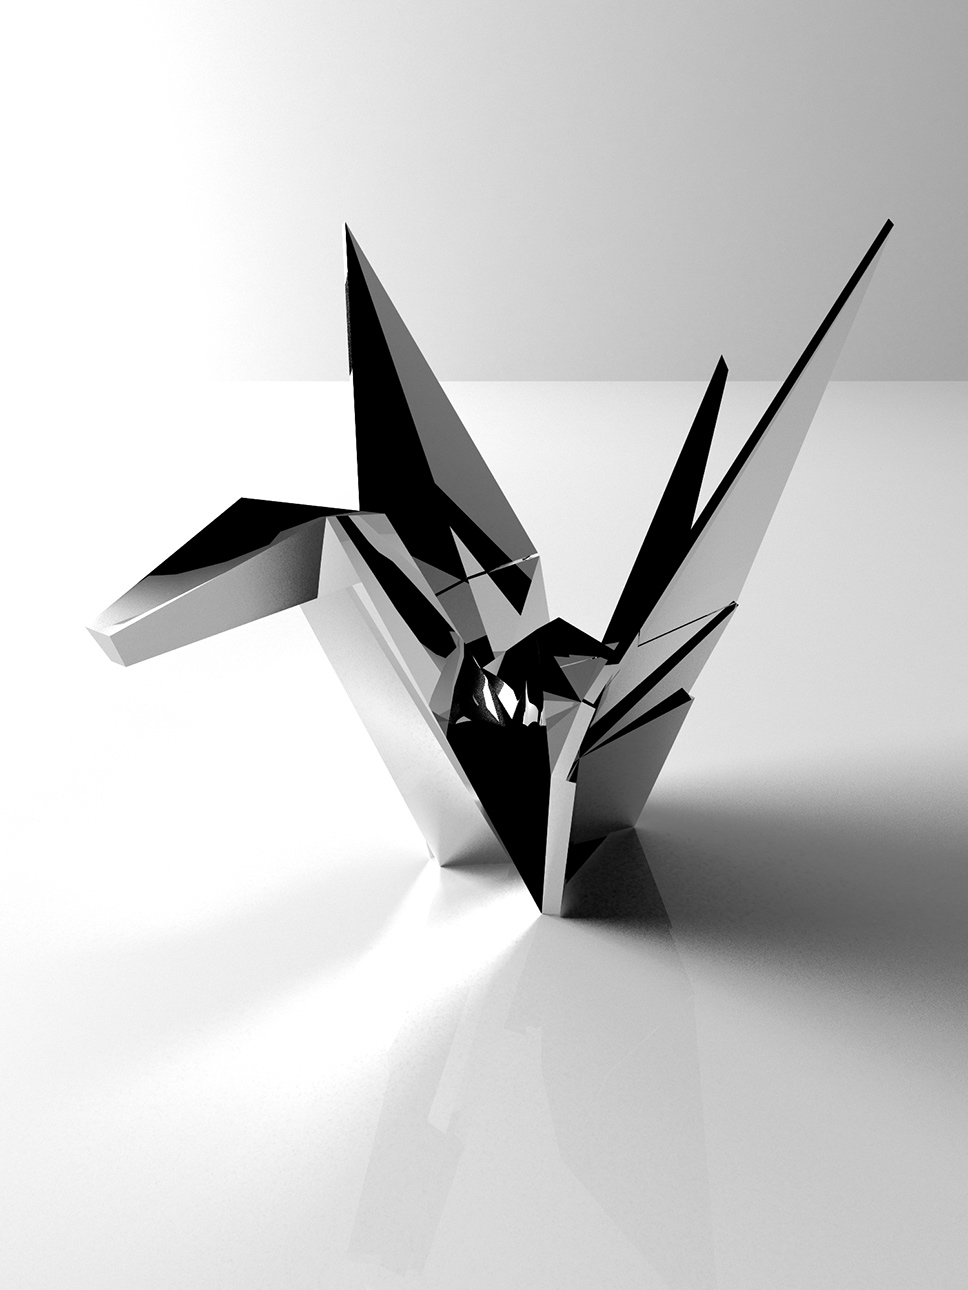 Product design rubinetterie Origami - progettazione, modellazione 3D e rendering